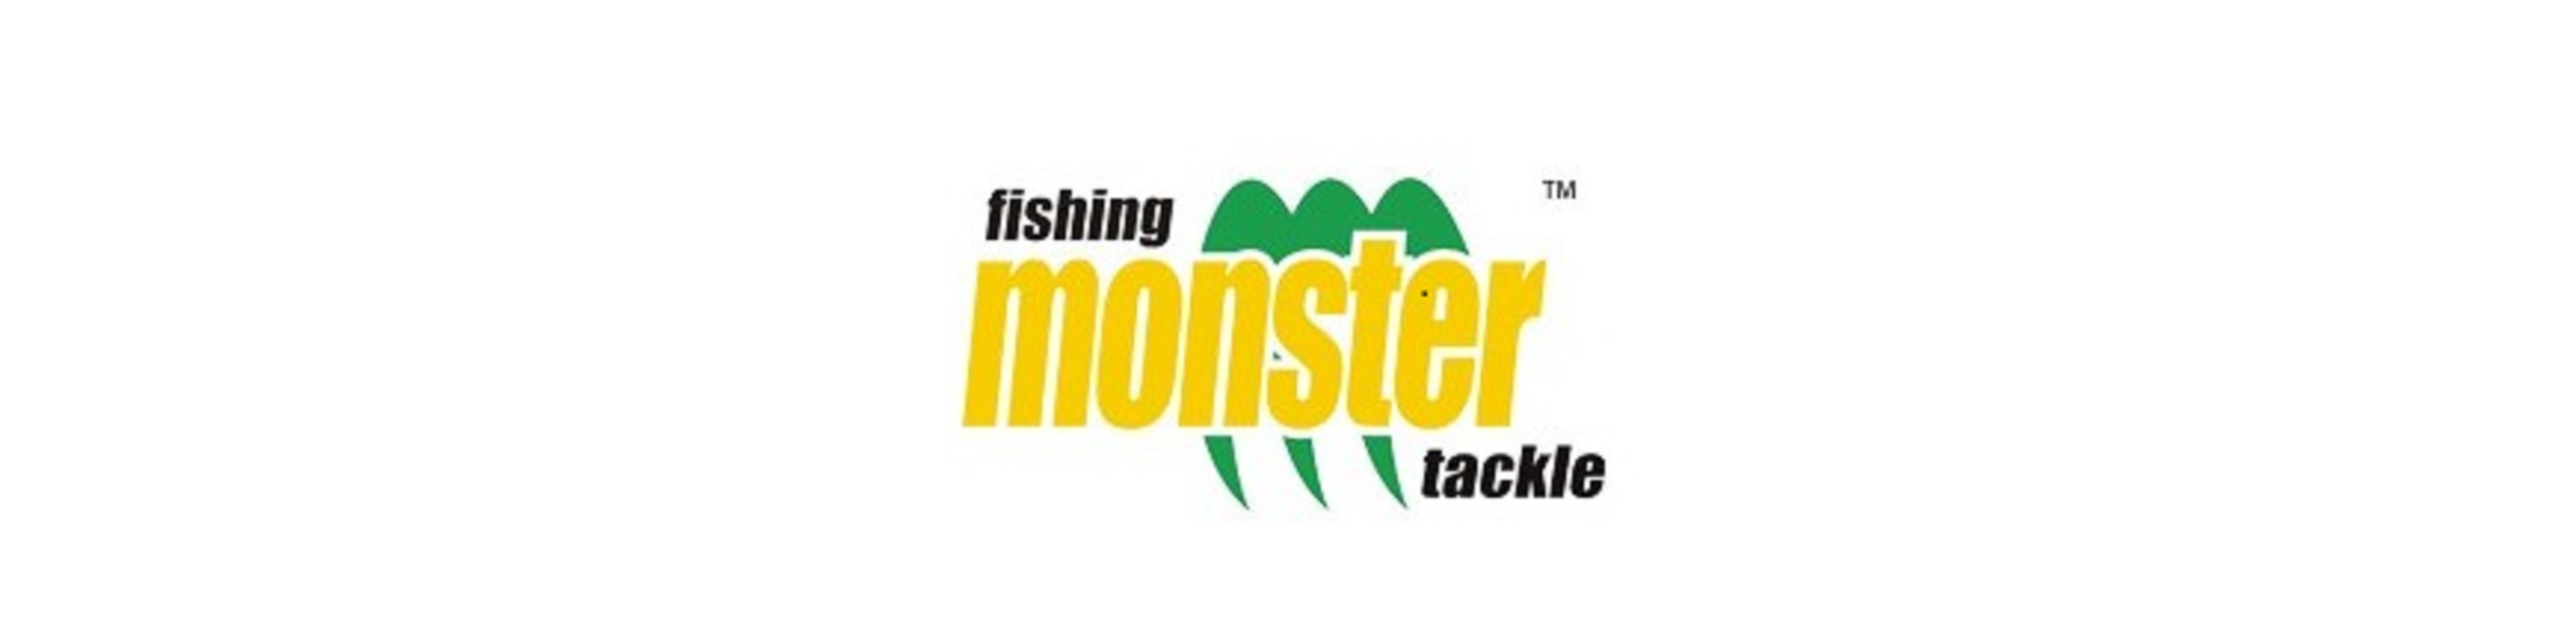 Monster Fishing